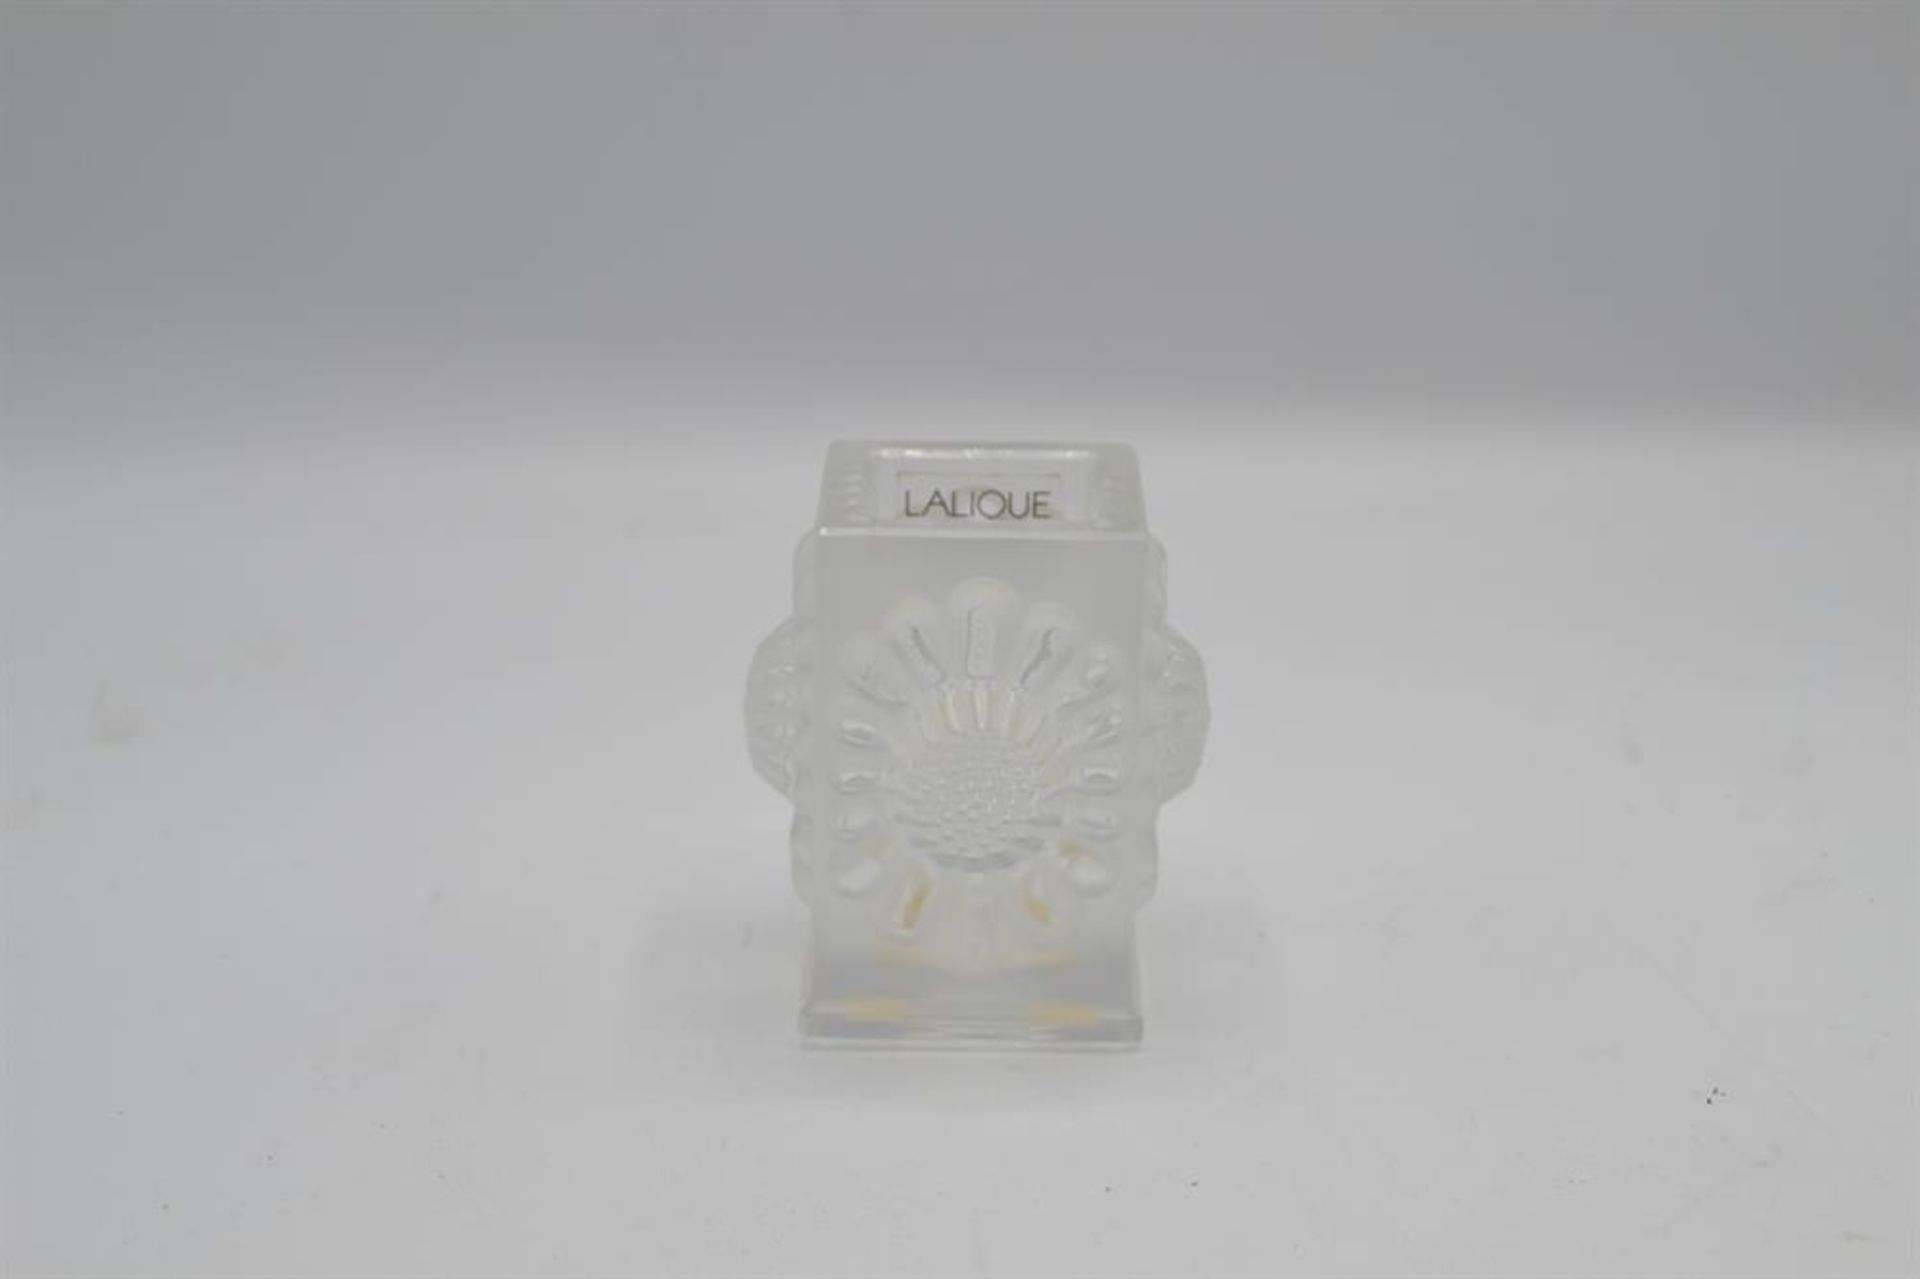 Lalique Vase Kristallglas Sonnenblumen Relief, handsigniert "Lalique France" 8cm